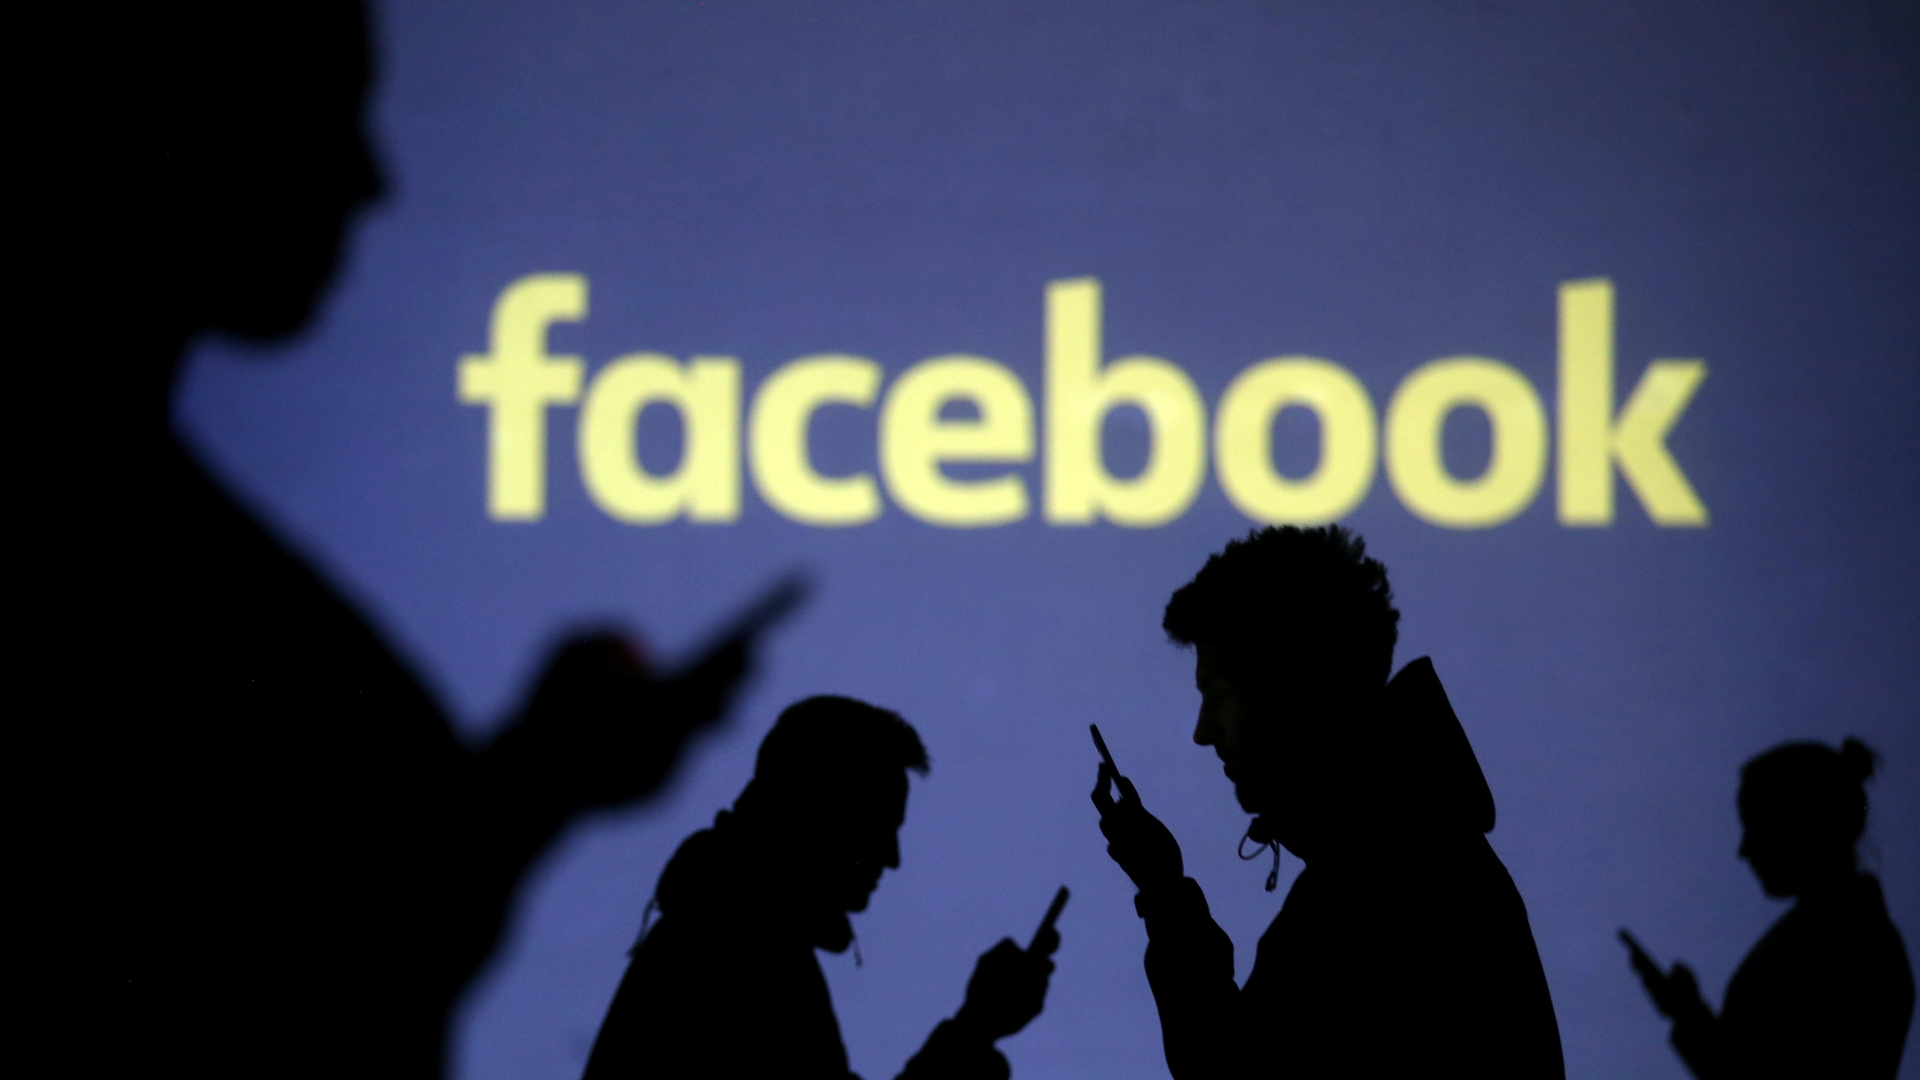 Die Schatten von Menschen, die auf Smartphones schauen, vor dem Facebook-Logo | REUTERS